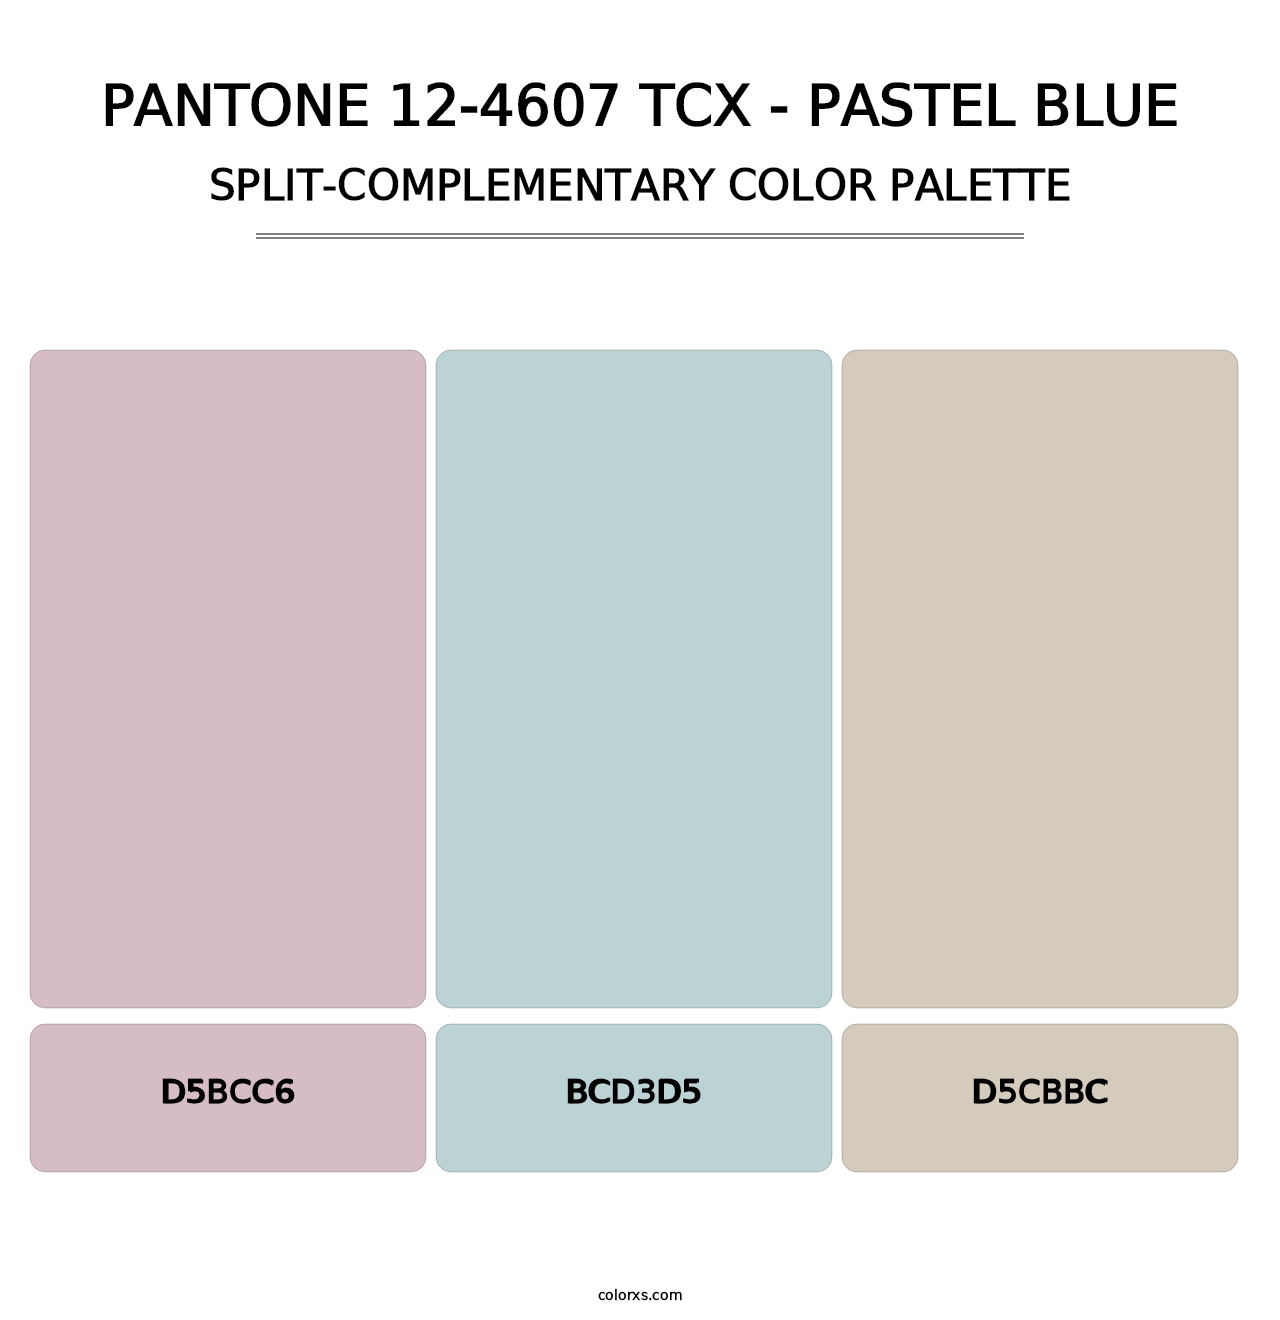 PANTONE 12-4607 TCX - Pastel Blue - Split-Complementary Color Palette